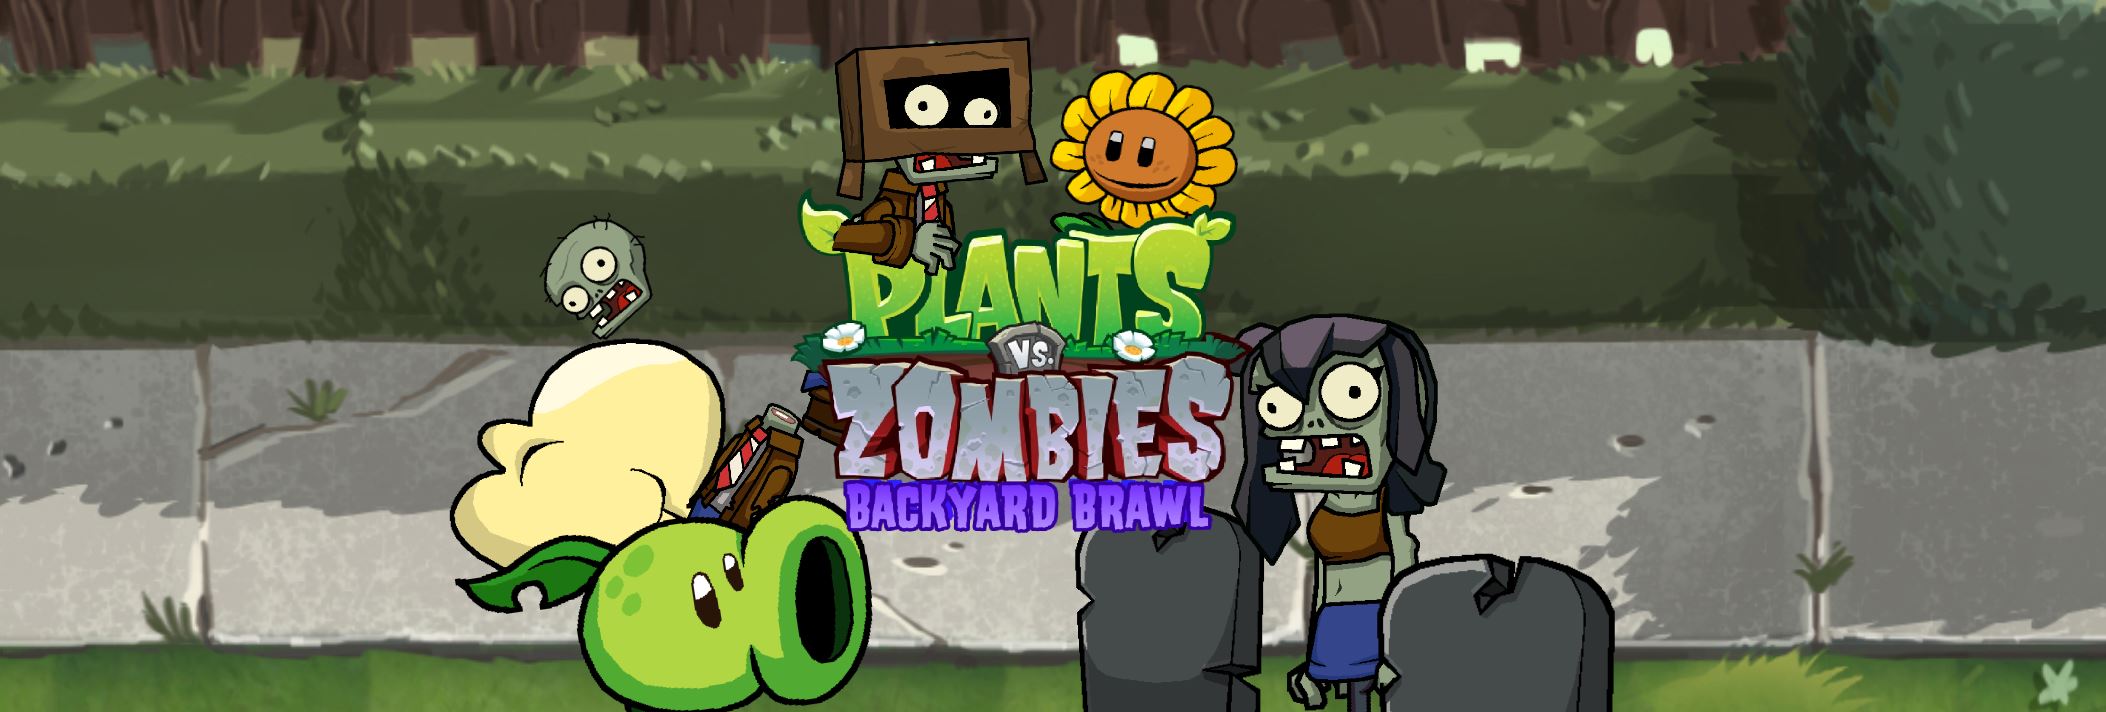 Plants Vs. Zombies: Backyard Brawl (fangame)